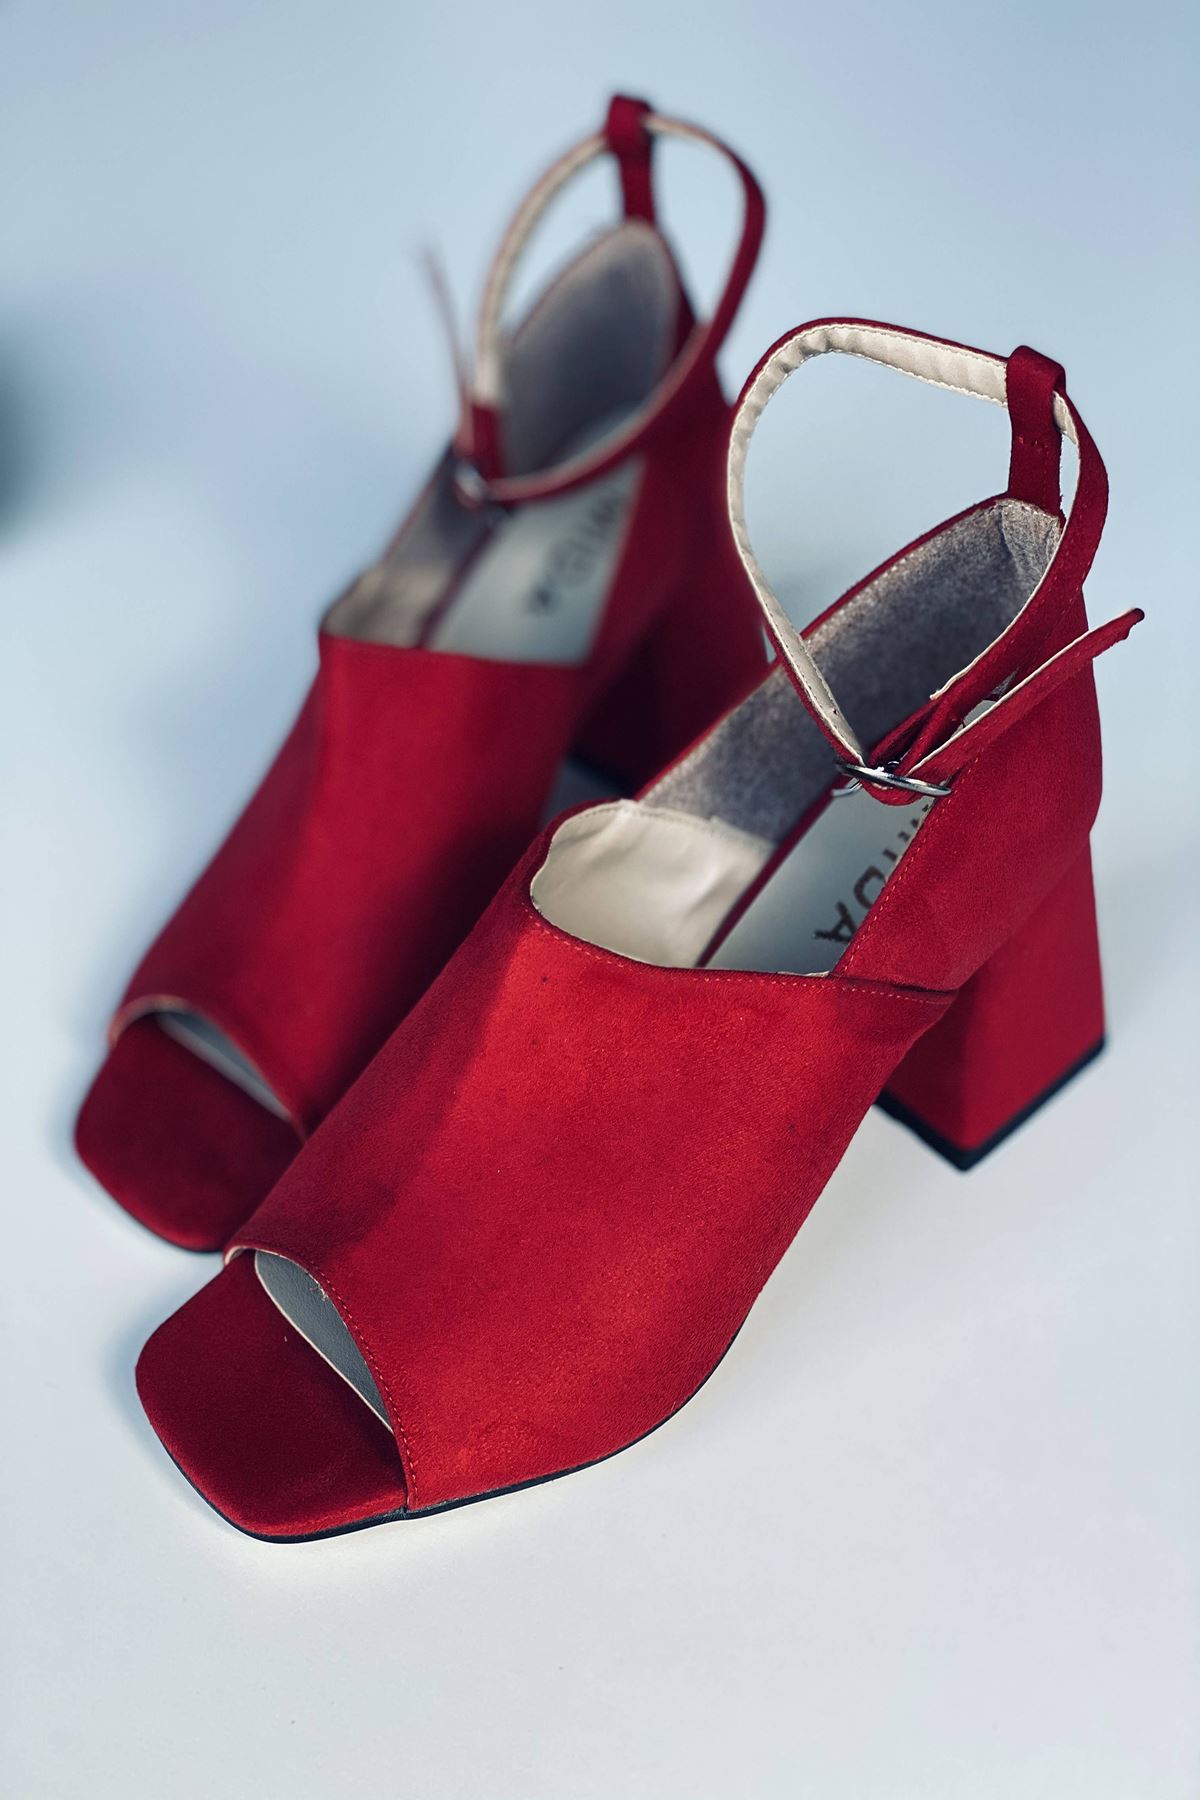 Y706 Kırmızı Süet Topuklu Ayakkabı